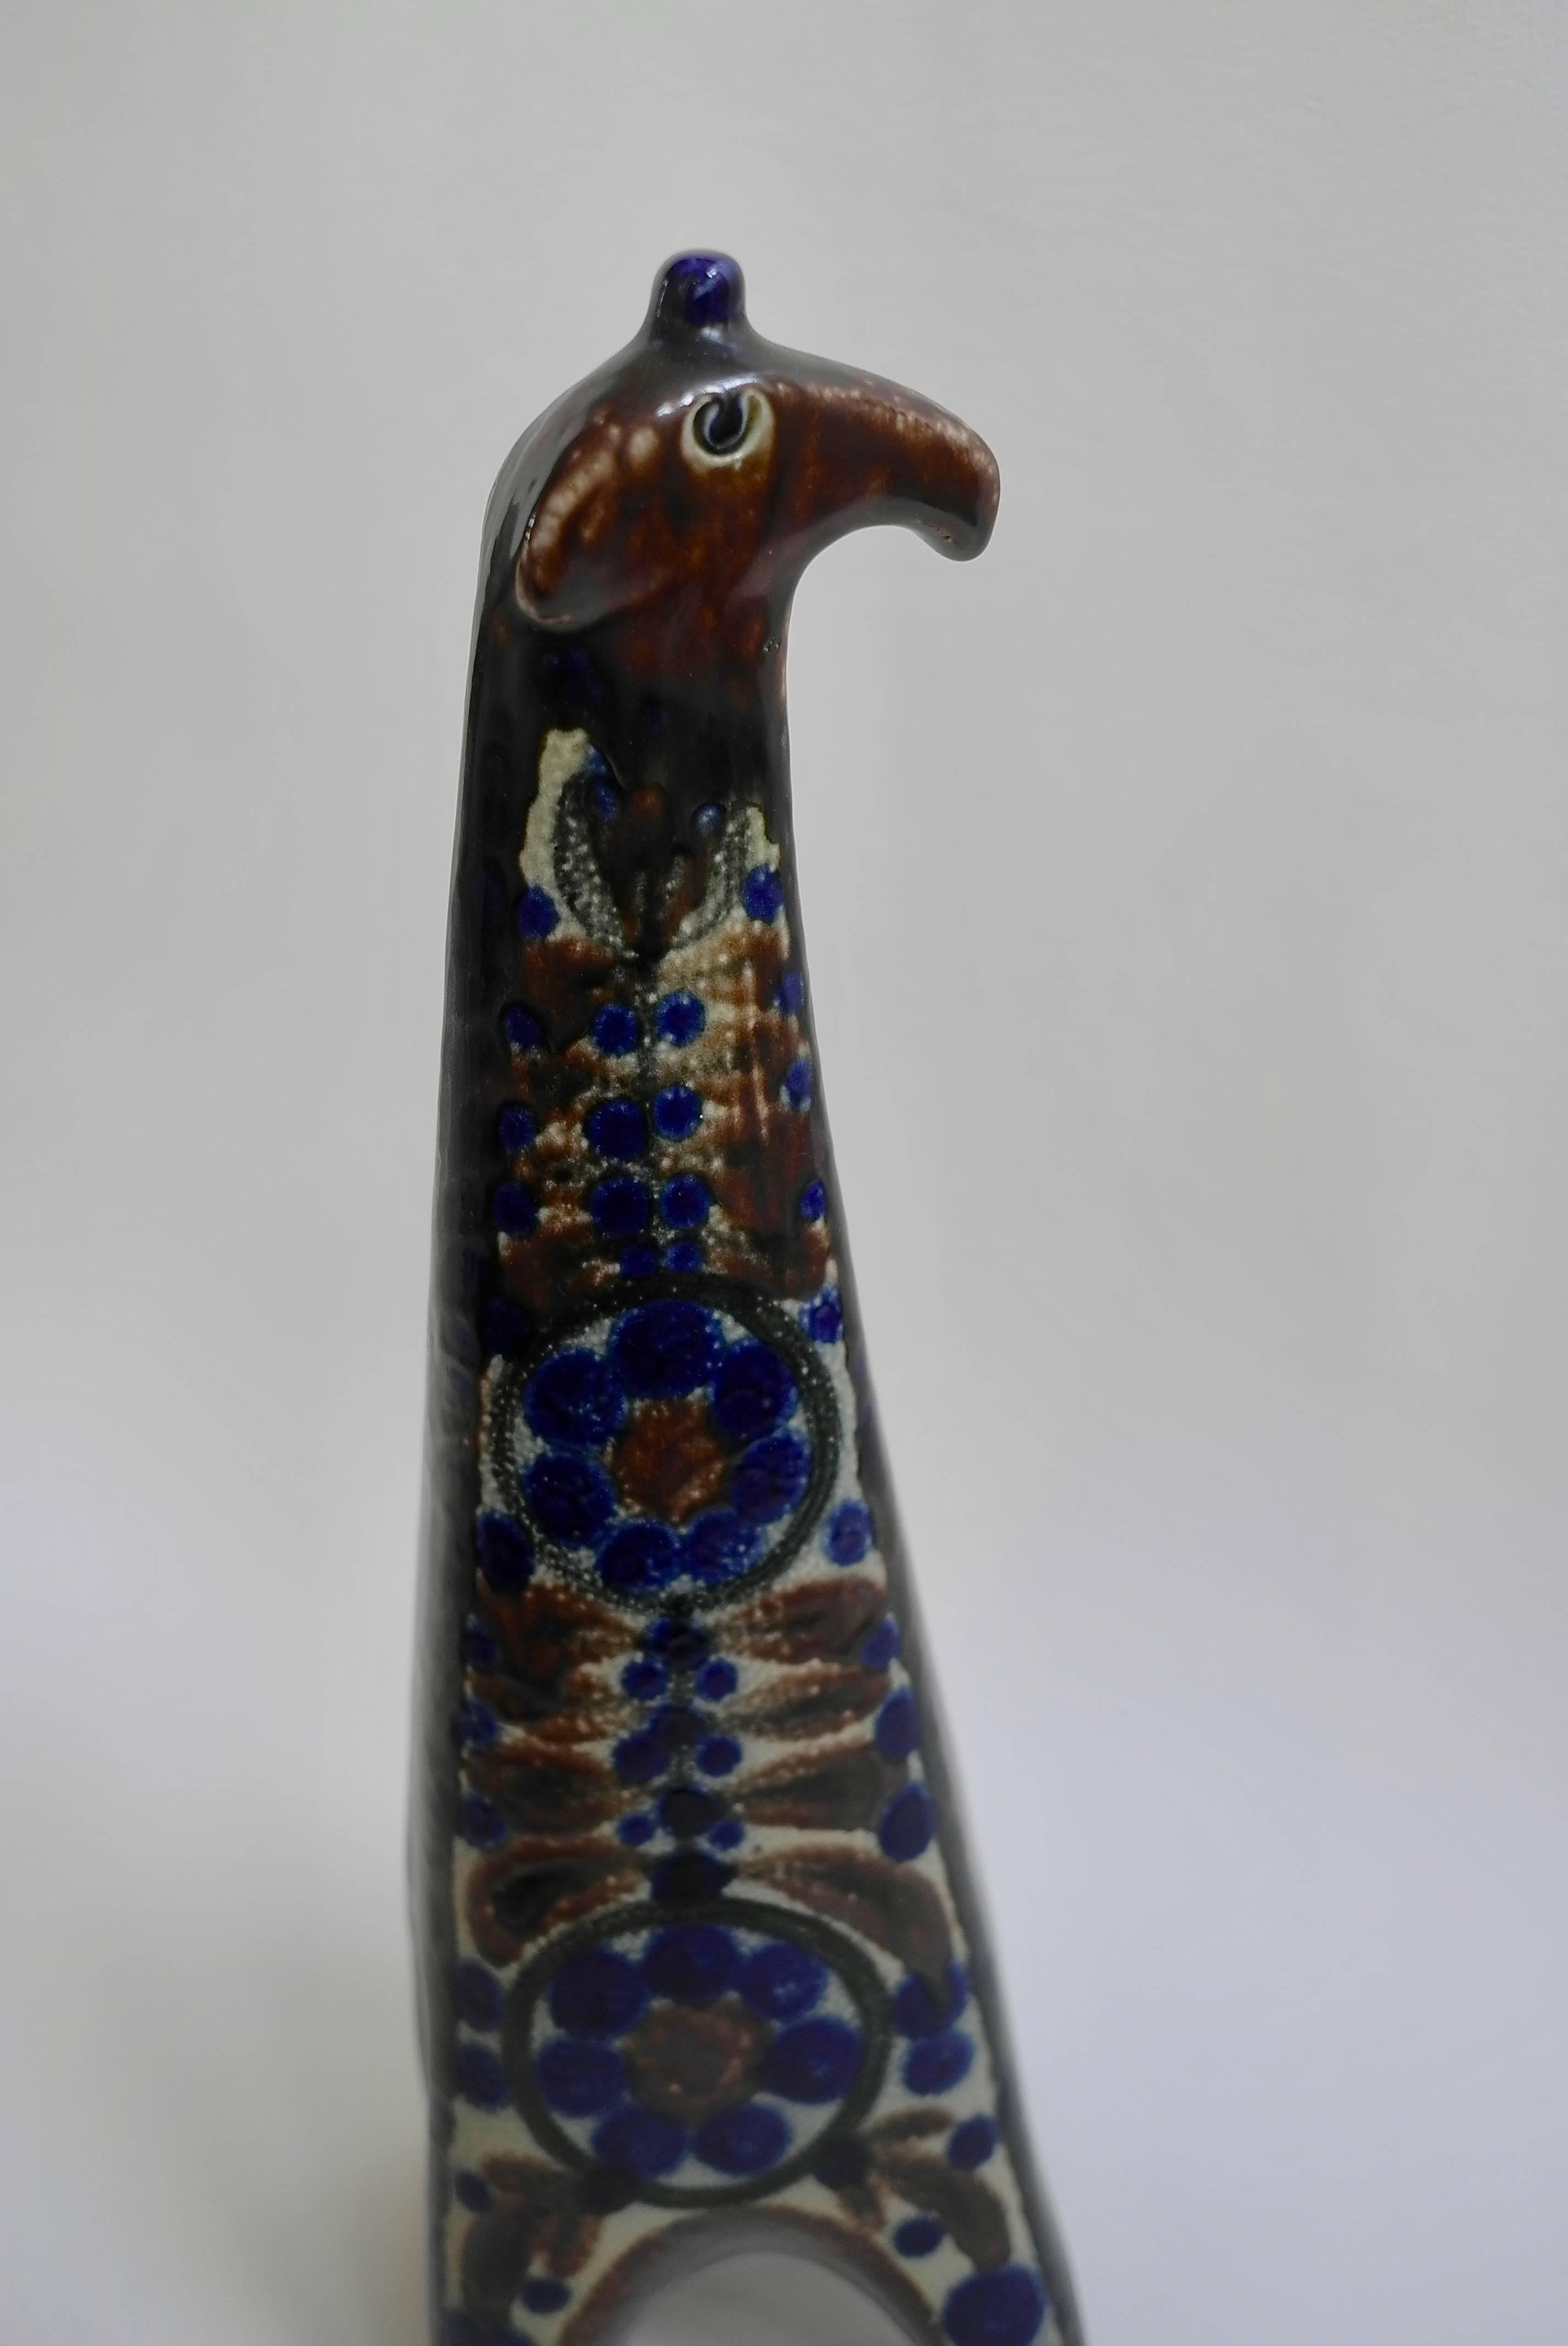 Large Danish ceramic giraffe, 1960s. In beautiful blue and brown tones.